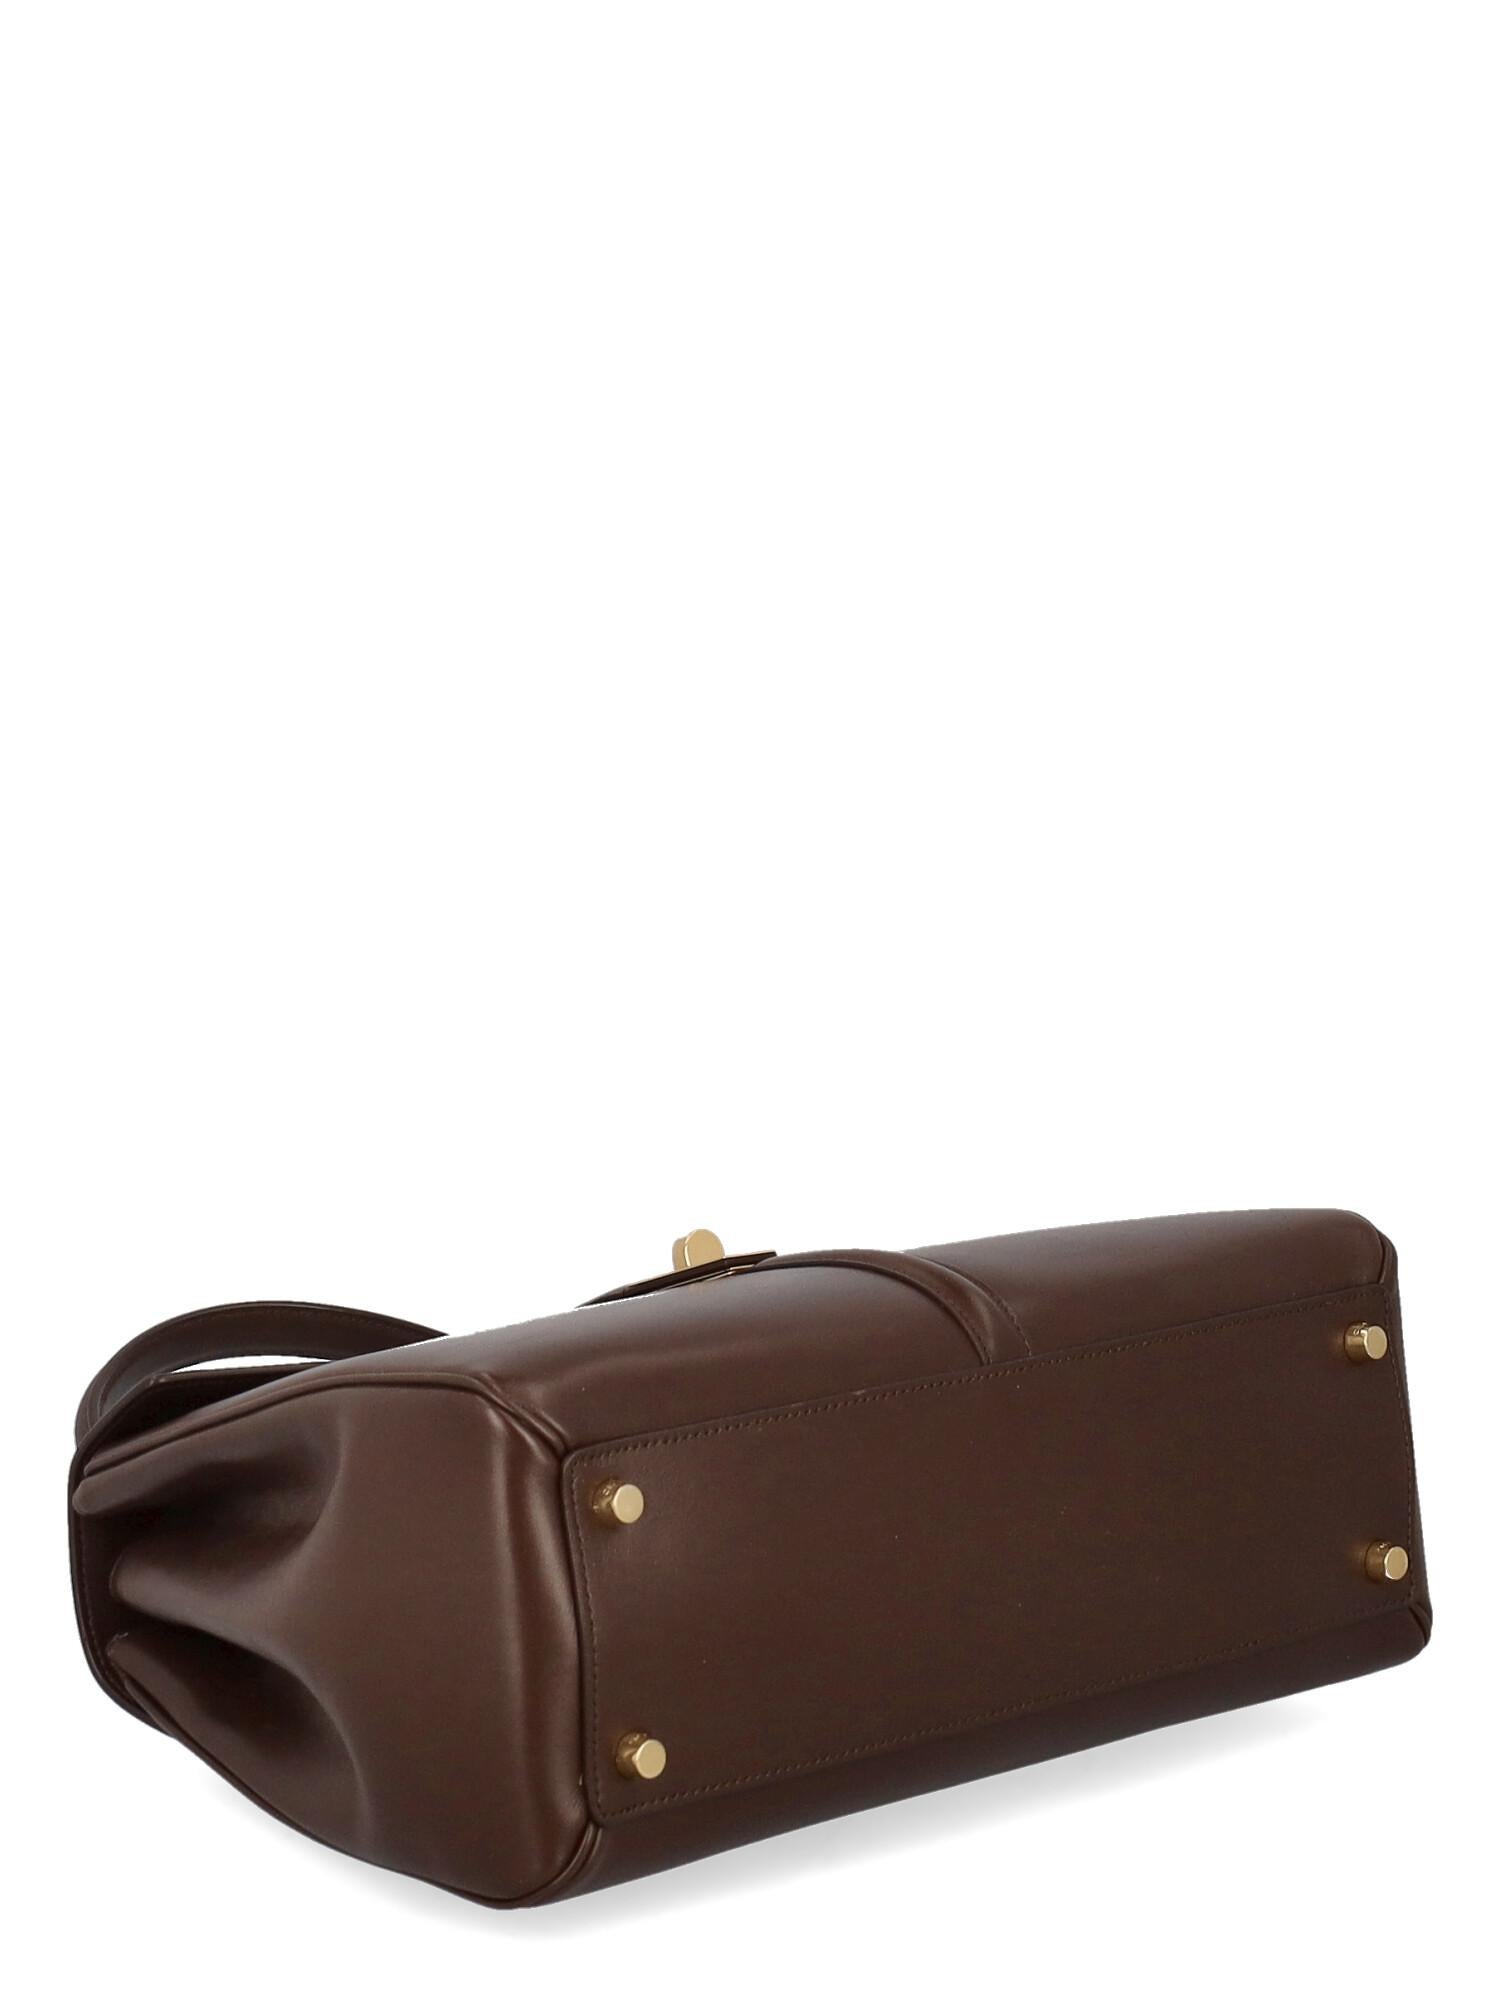 Women's Celine  Women   Handbags   Brown Leather  For Sale